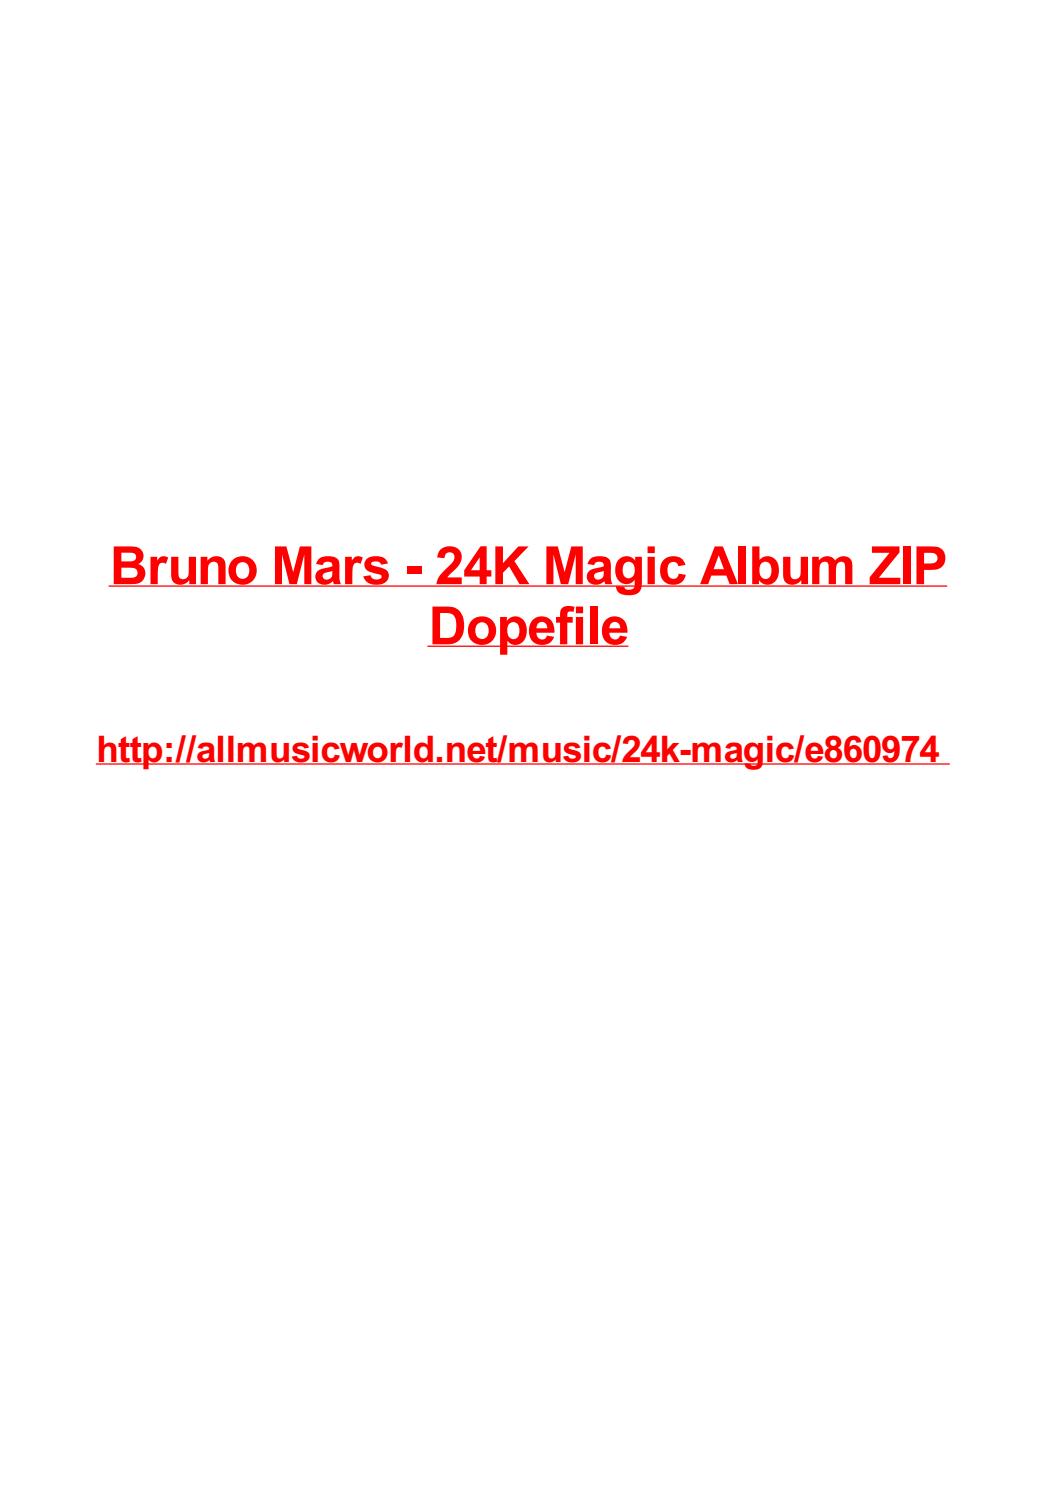 Bruno Mars Album Download Zip Free